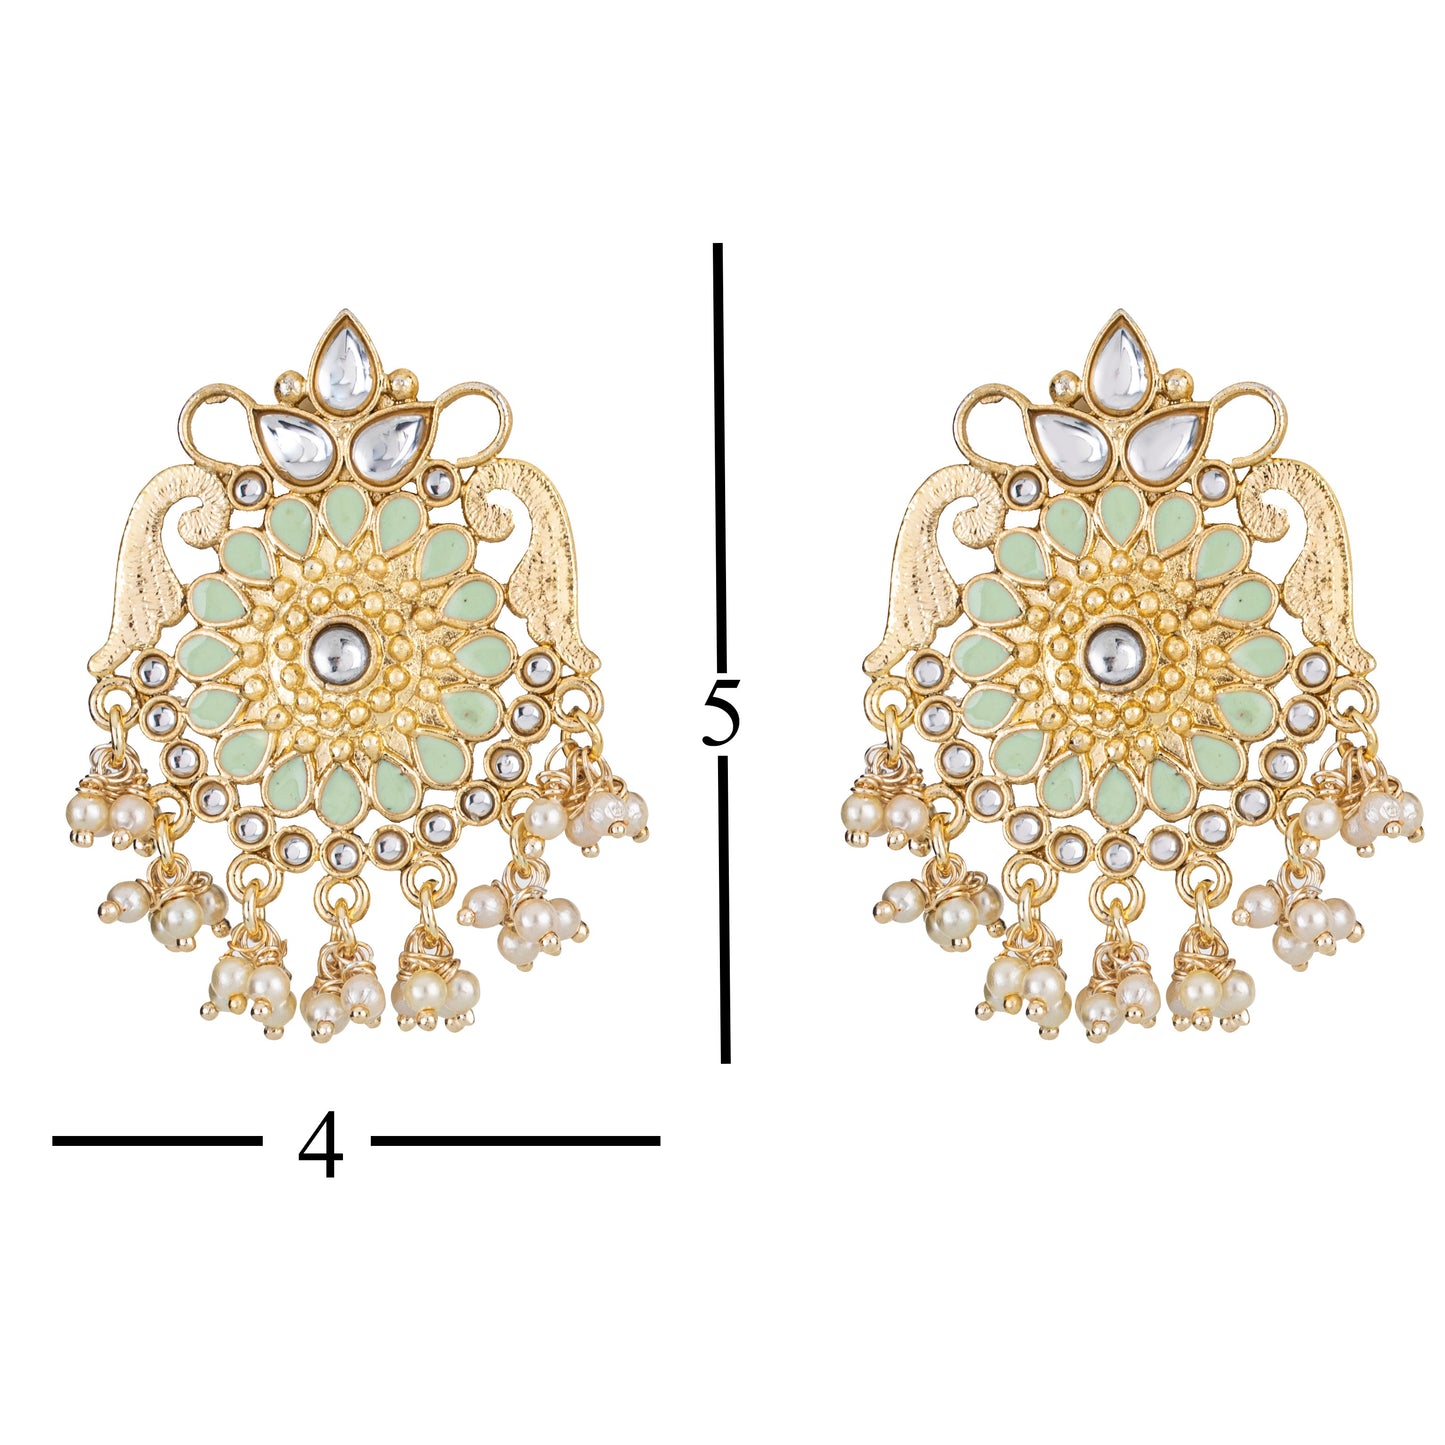 Bdiva 18K Gold Plated Green Kundan Meenakari Earrings with Semi Cultured Pearls.